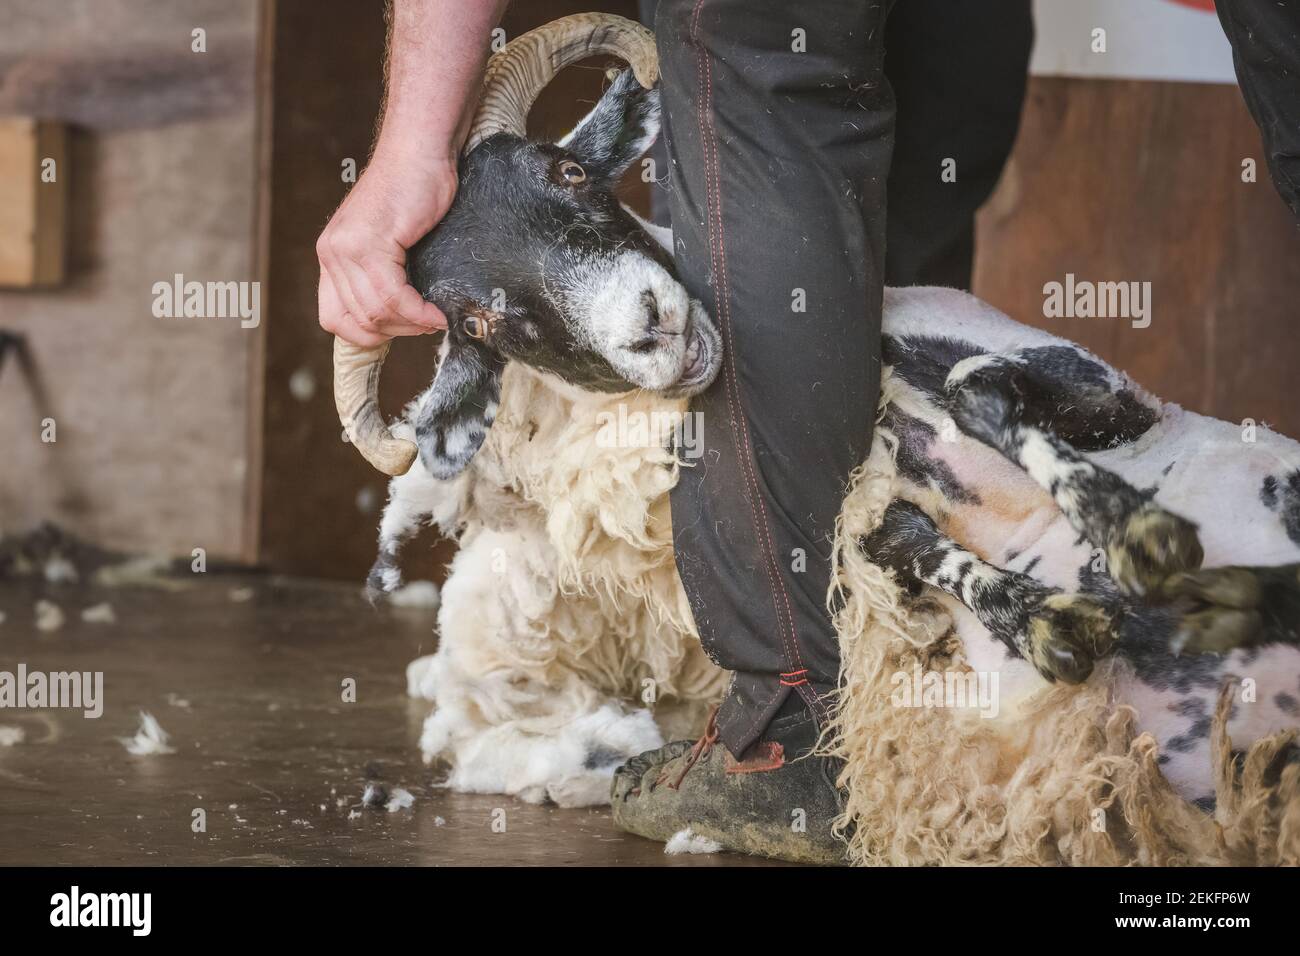 Dettaglio in primo piano della tosatura di pecore come un tosatore strazza la lana da un maschio scozzese Blackface gregge ram (Ovis Aries) come parte della vita rurale. Foto Stock